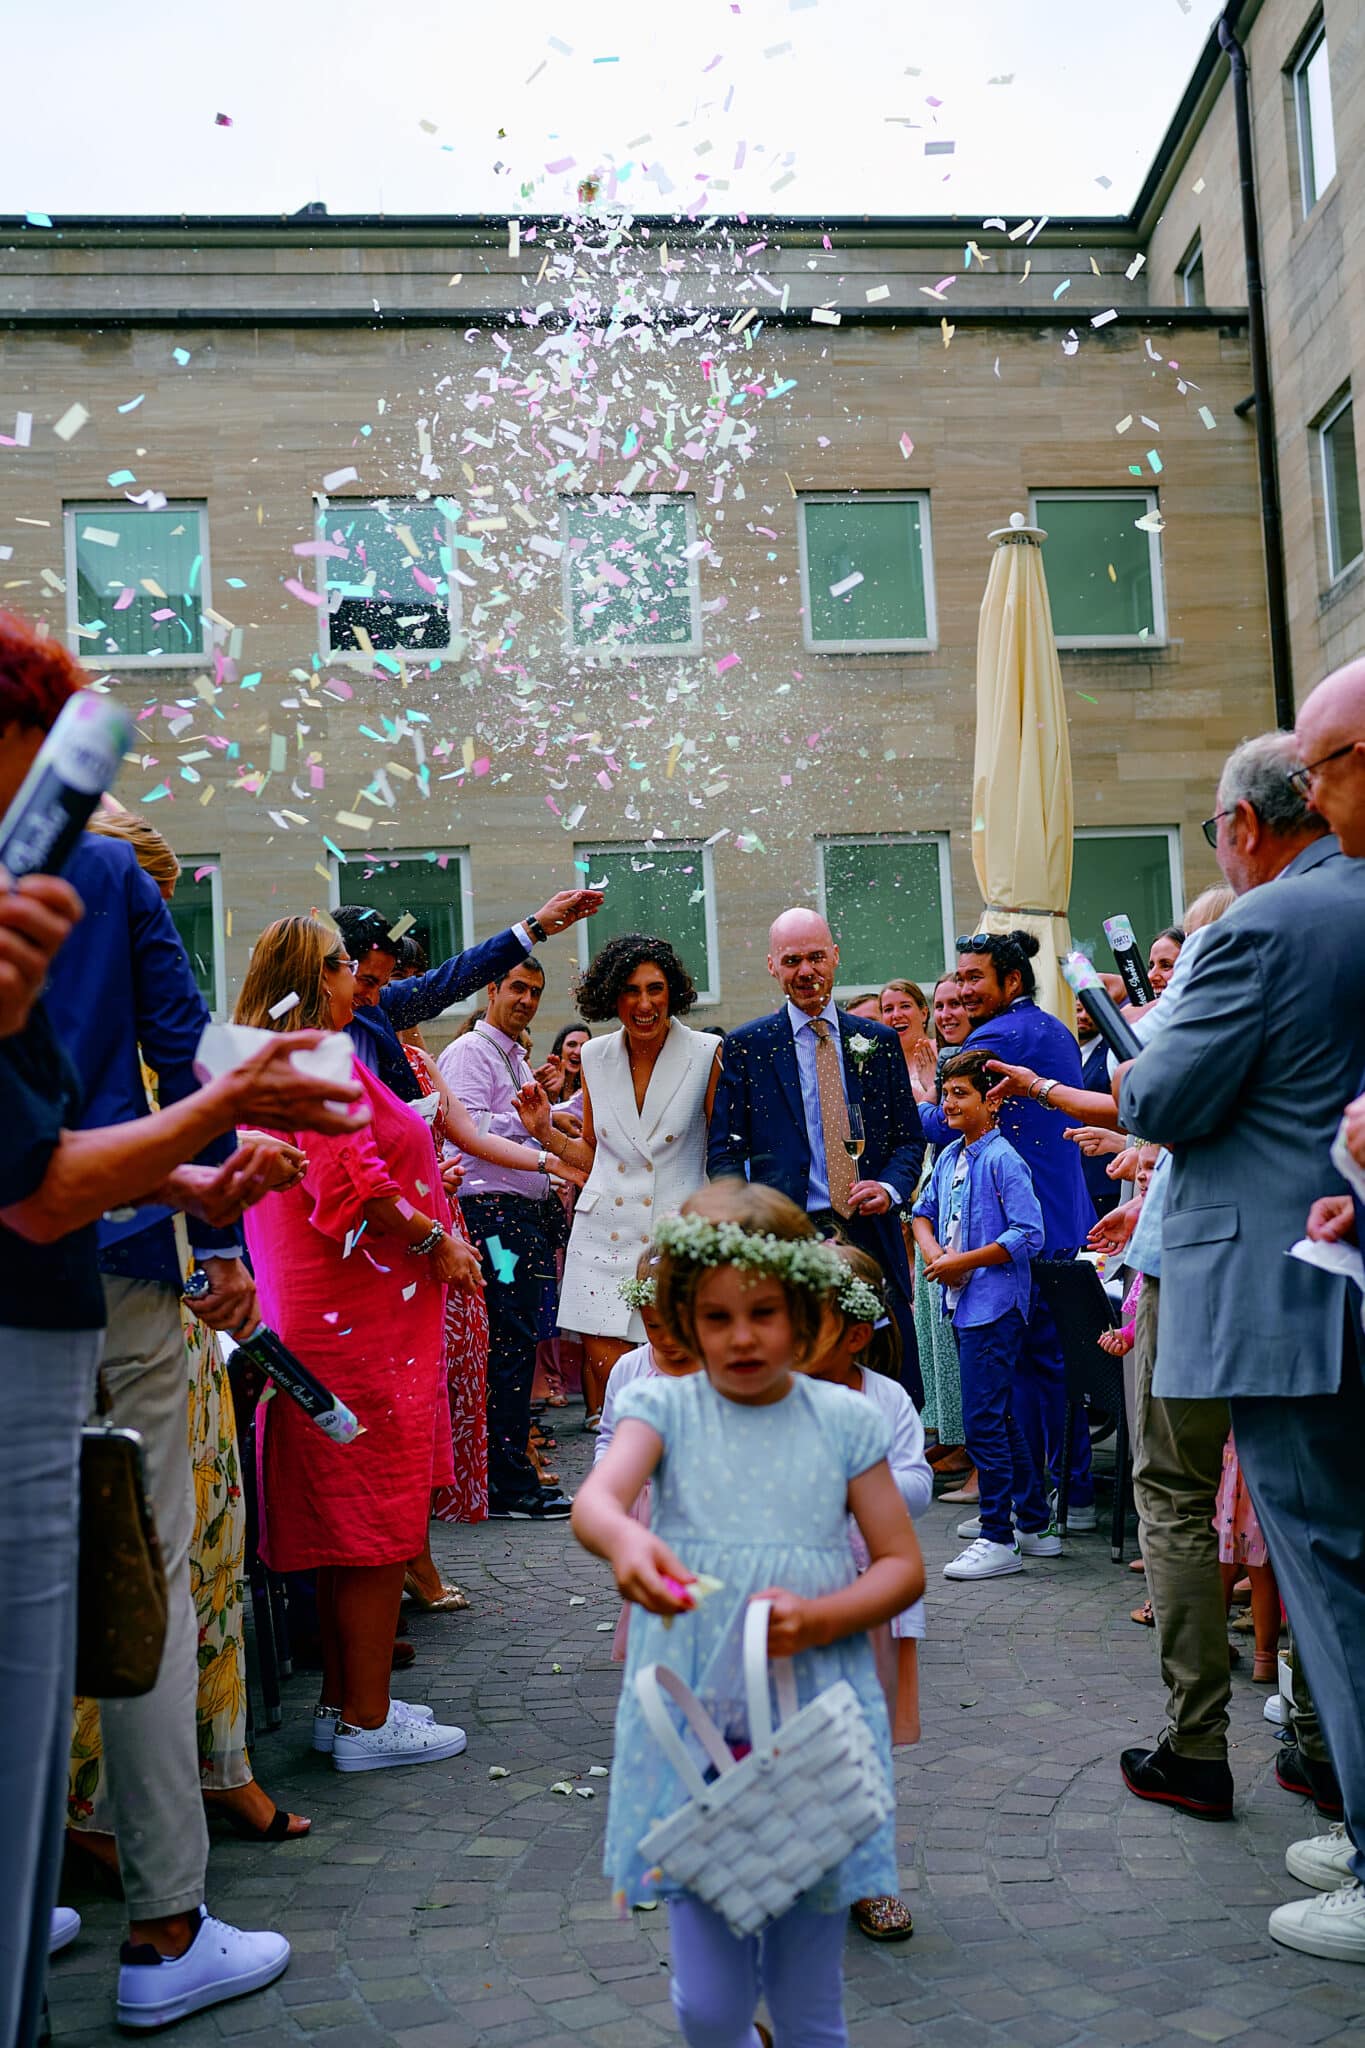 Ein Brautpaar geht während einer Hochzeitsfeier mit in die Luft geworfenem Konfetti durch eine Menschenmenge von Gästen und fängt atemberaubende Hochzeitsbilder ein.